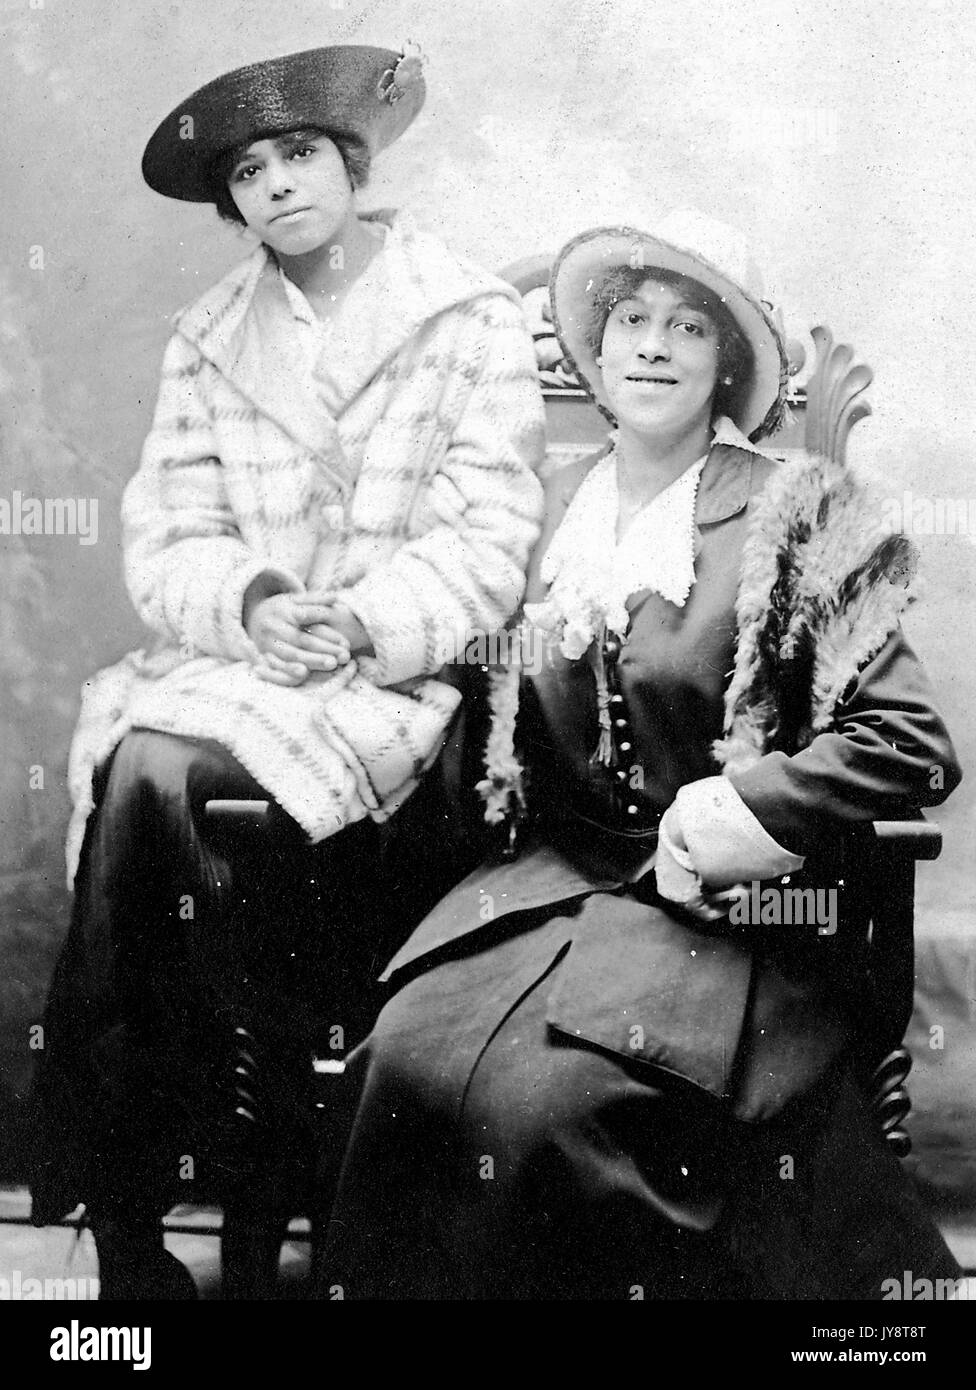 Retrato de dos mujeres afroamericanas sentado en una silla, vistiendo vestidos y sombreros, en un estudio fotográfico, una mujer con una ligera sonrisa, 1915. Foto de stock